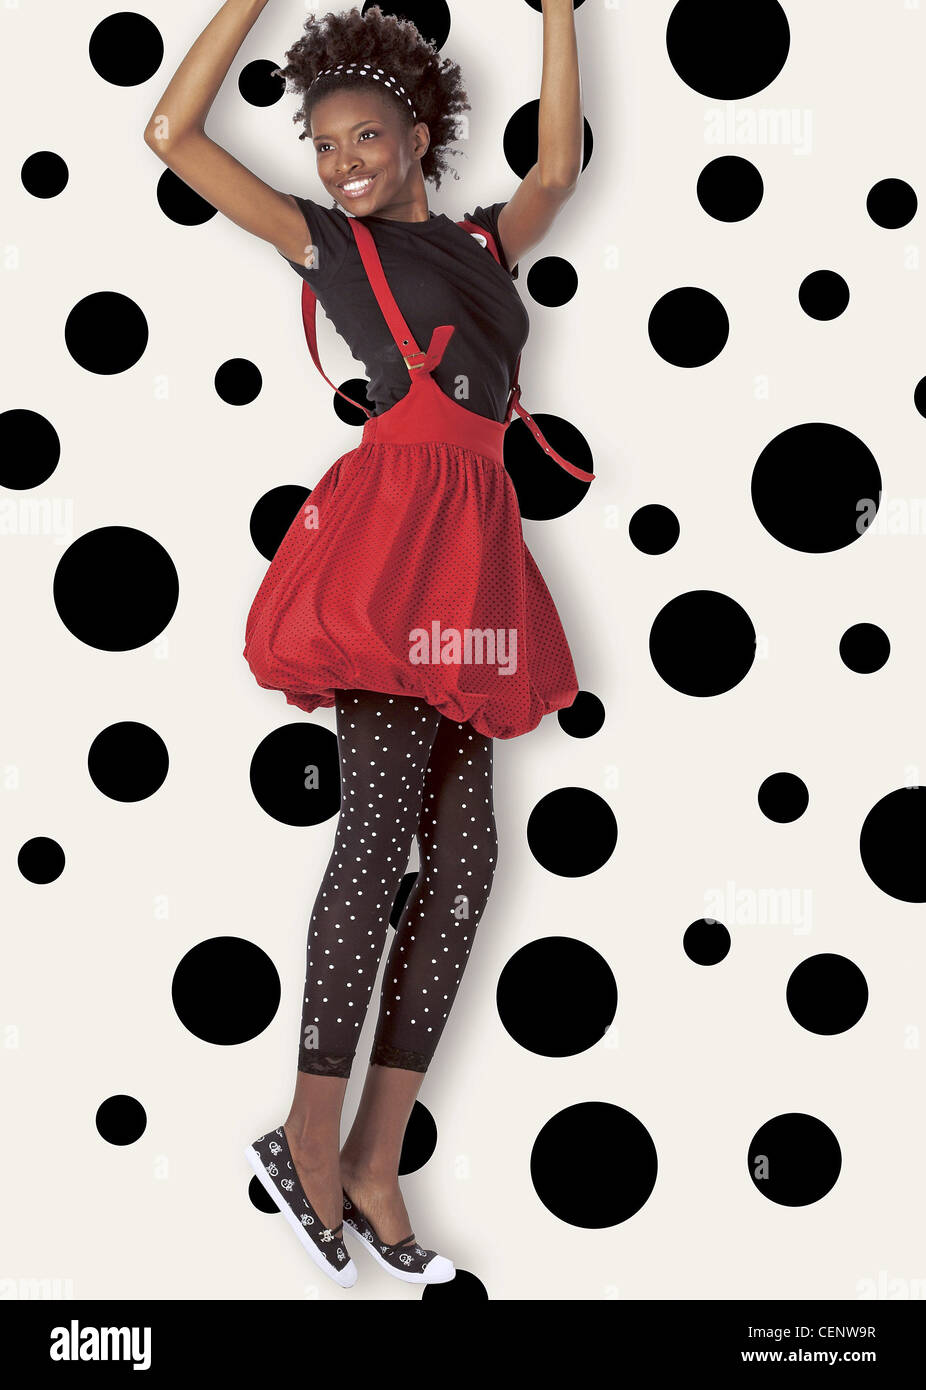 Female wearing black and white polka dot leggings, black T shirt, red puffball dress Stock Photo